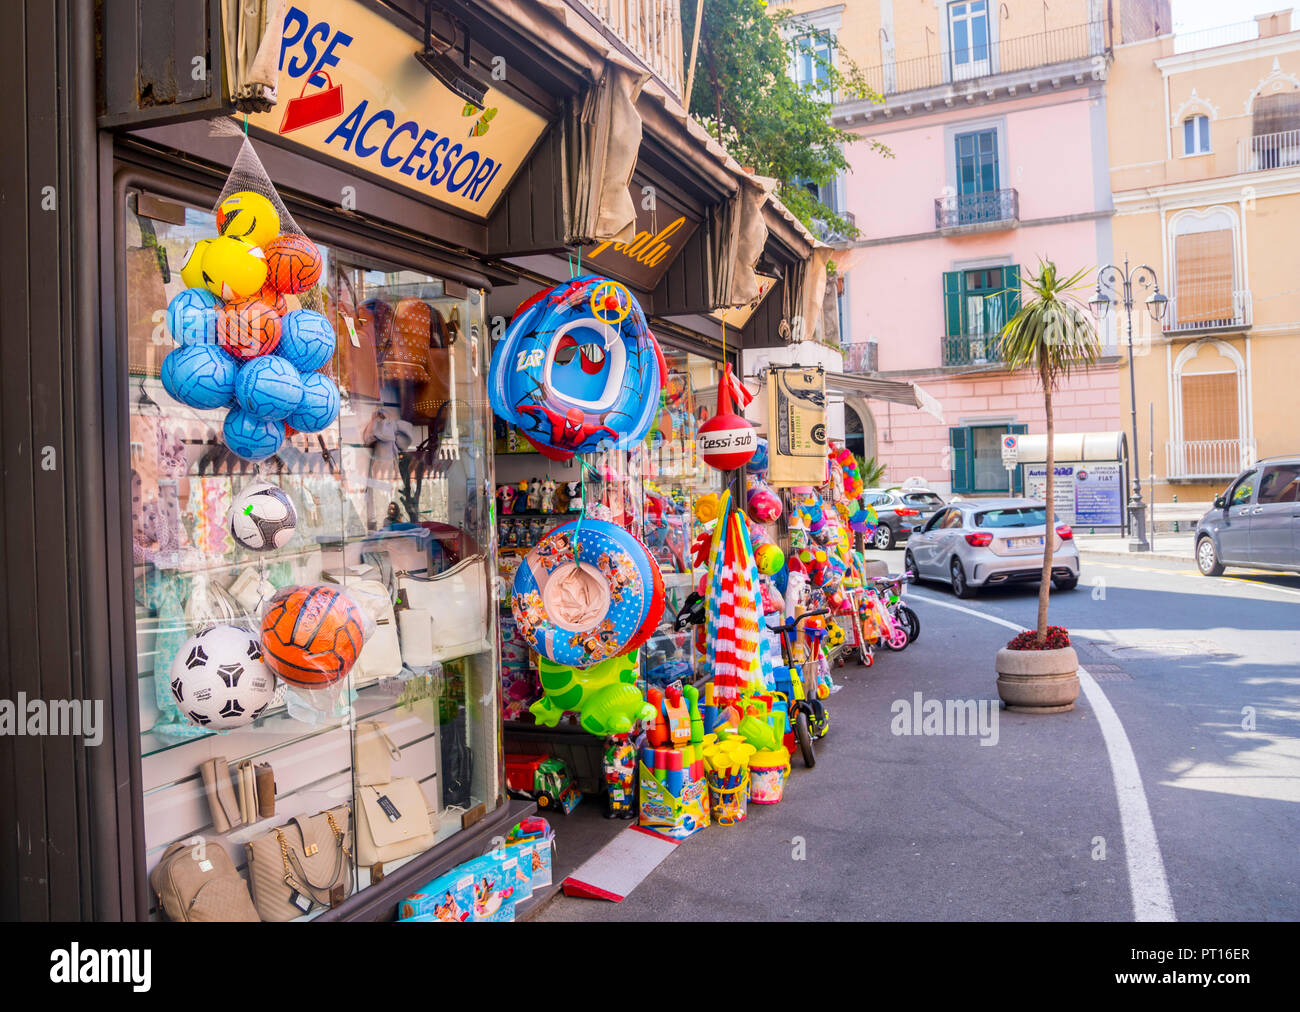 Toys shop italy immagini e fotografie stock ad alta risoluzione - Alamy